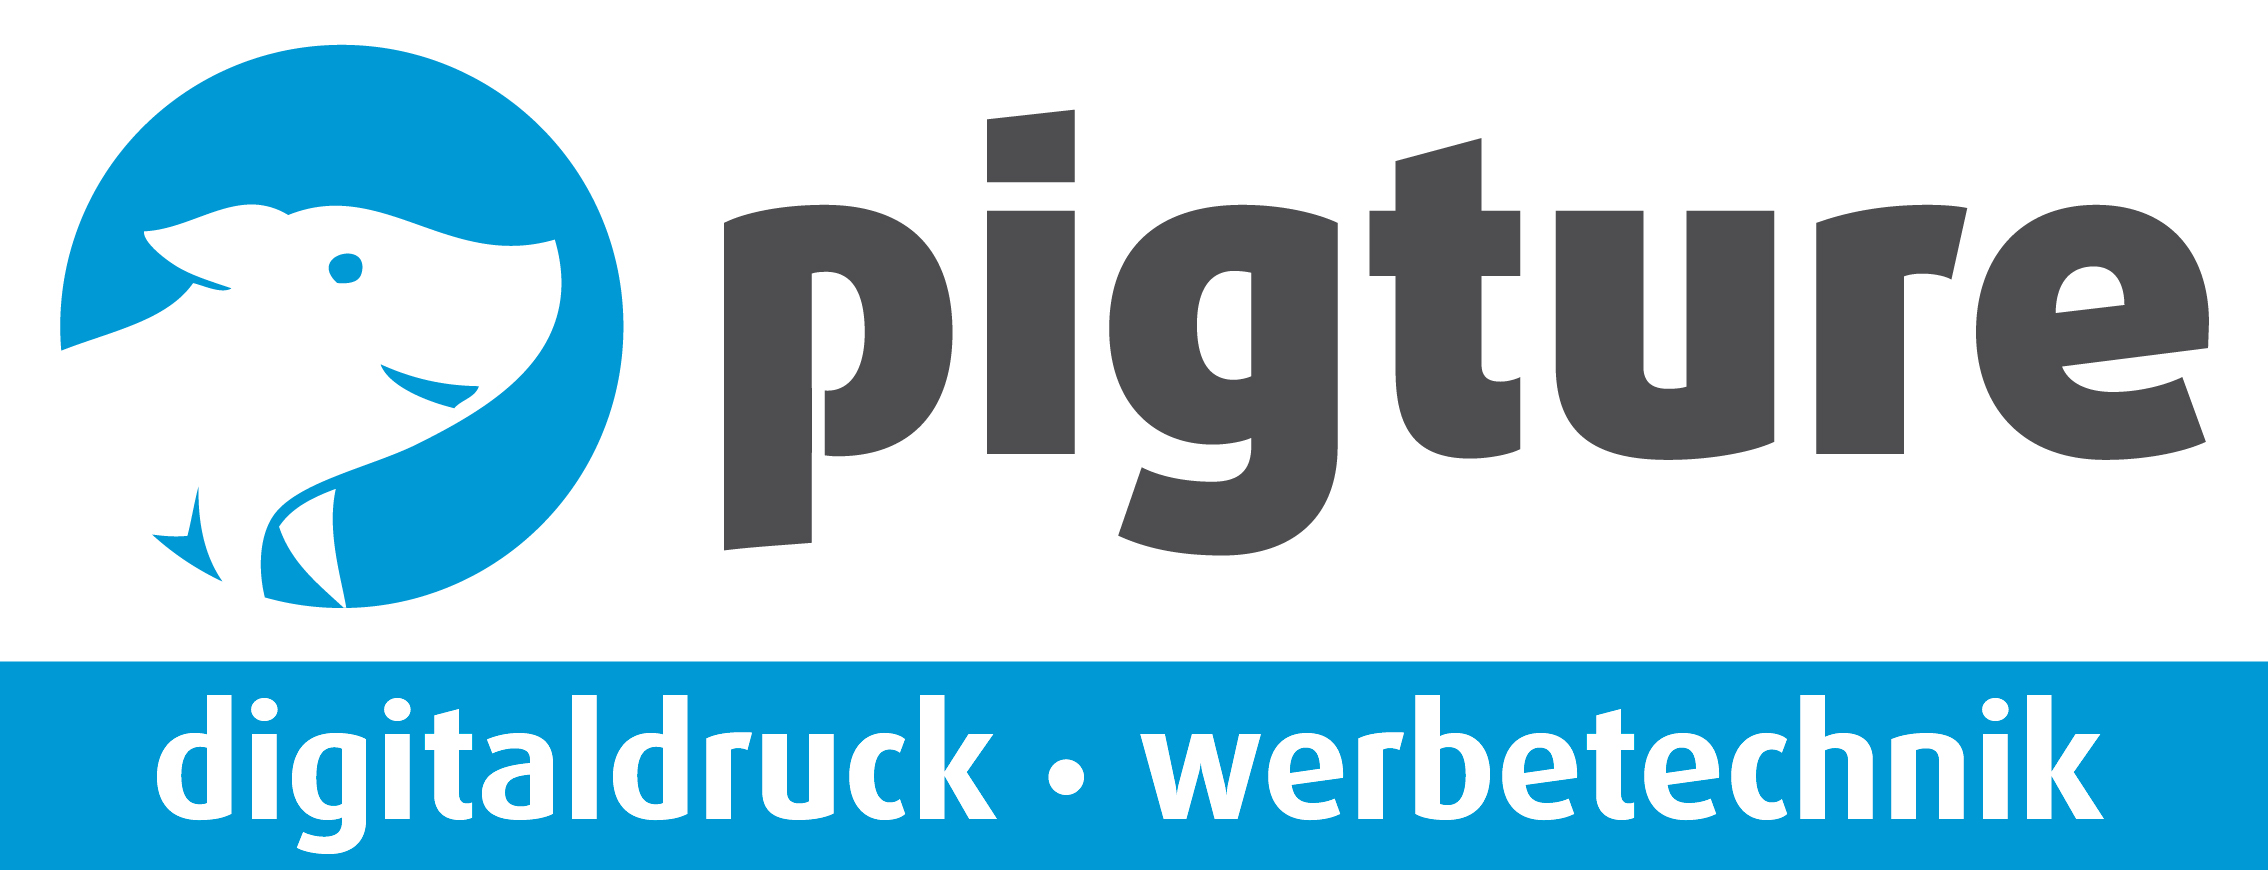 Logo pigture